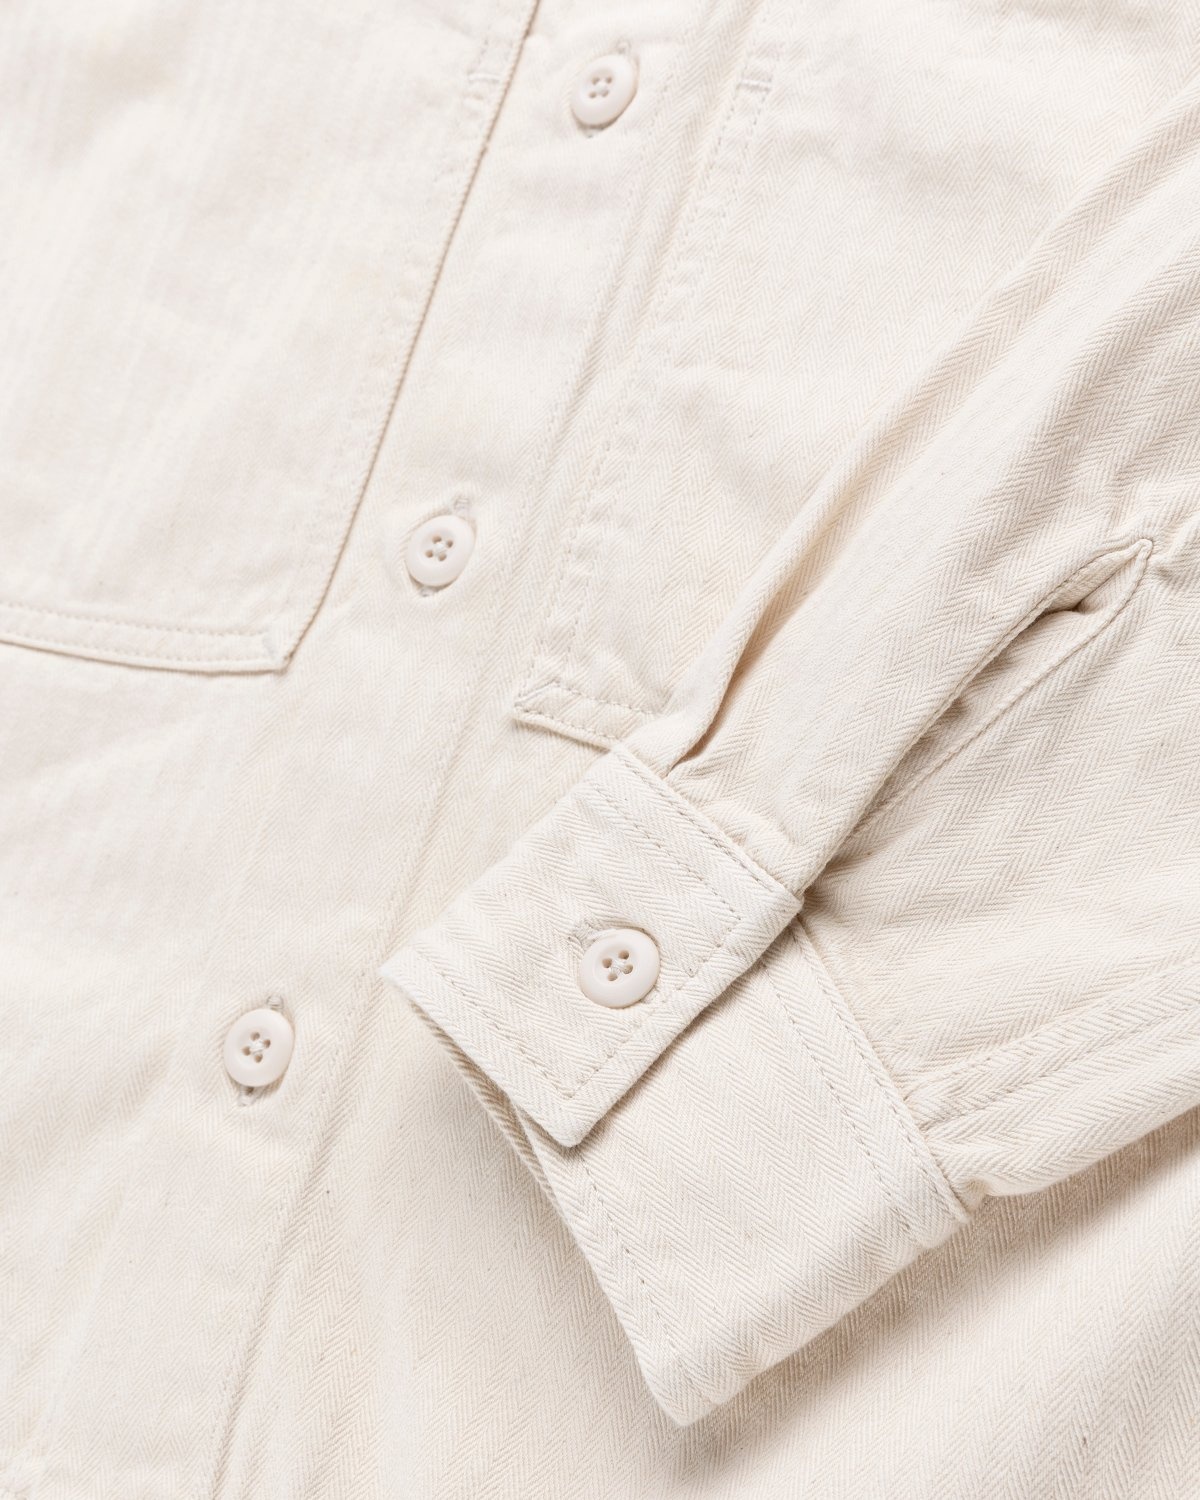 Carhartt WIP – Charter Shirt Natural - Longsleeve Shirts - Beige - Image 4